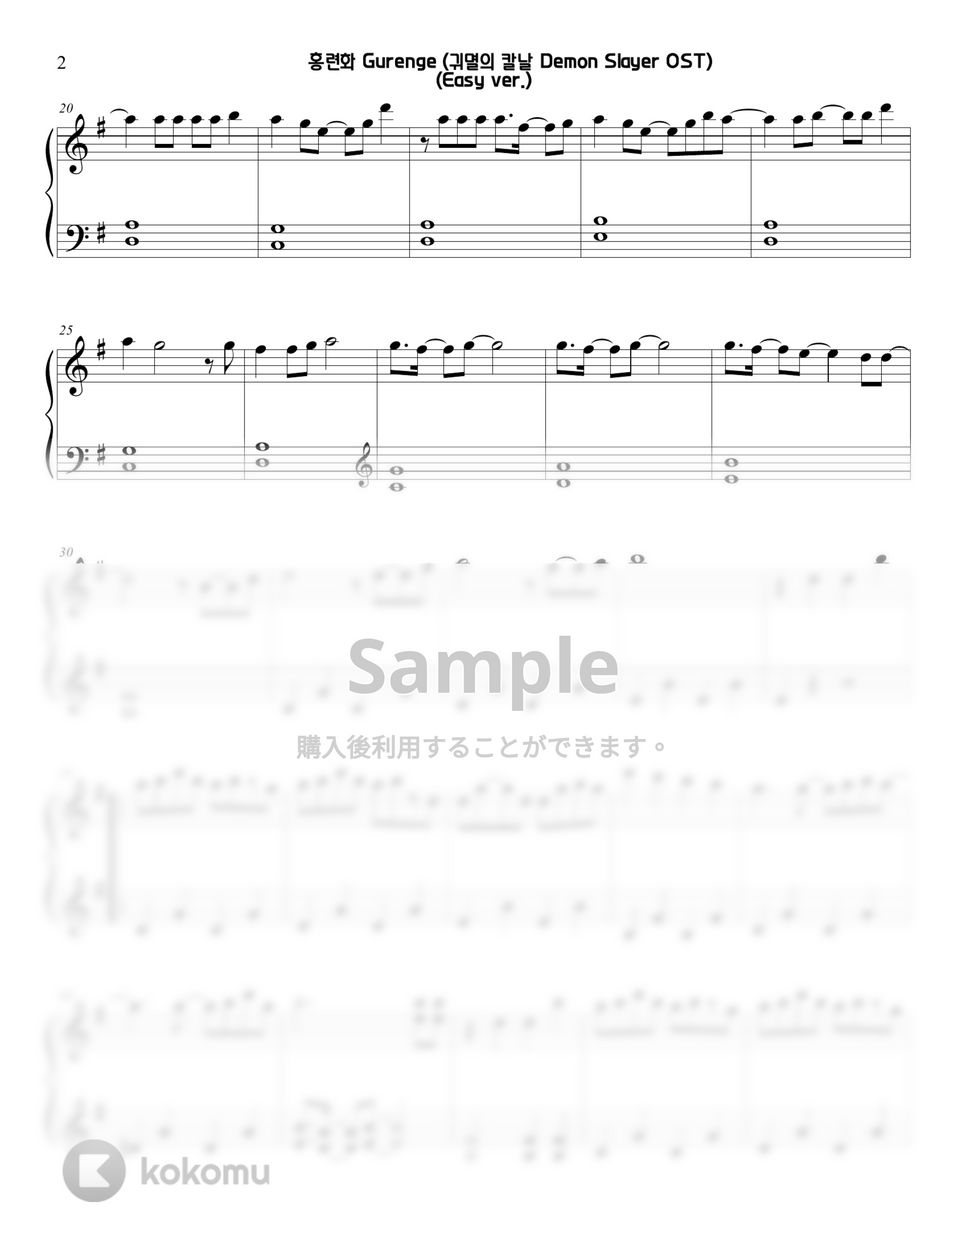 鬼滅の刃 - 紅蓮華 (Easy) by Sunny Fingers Piano